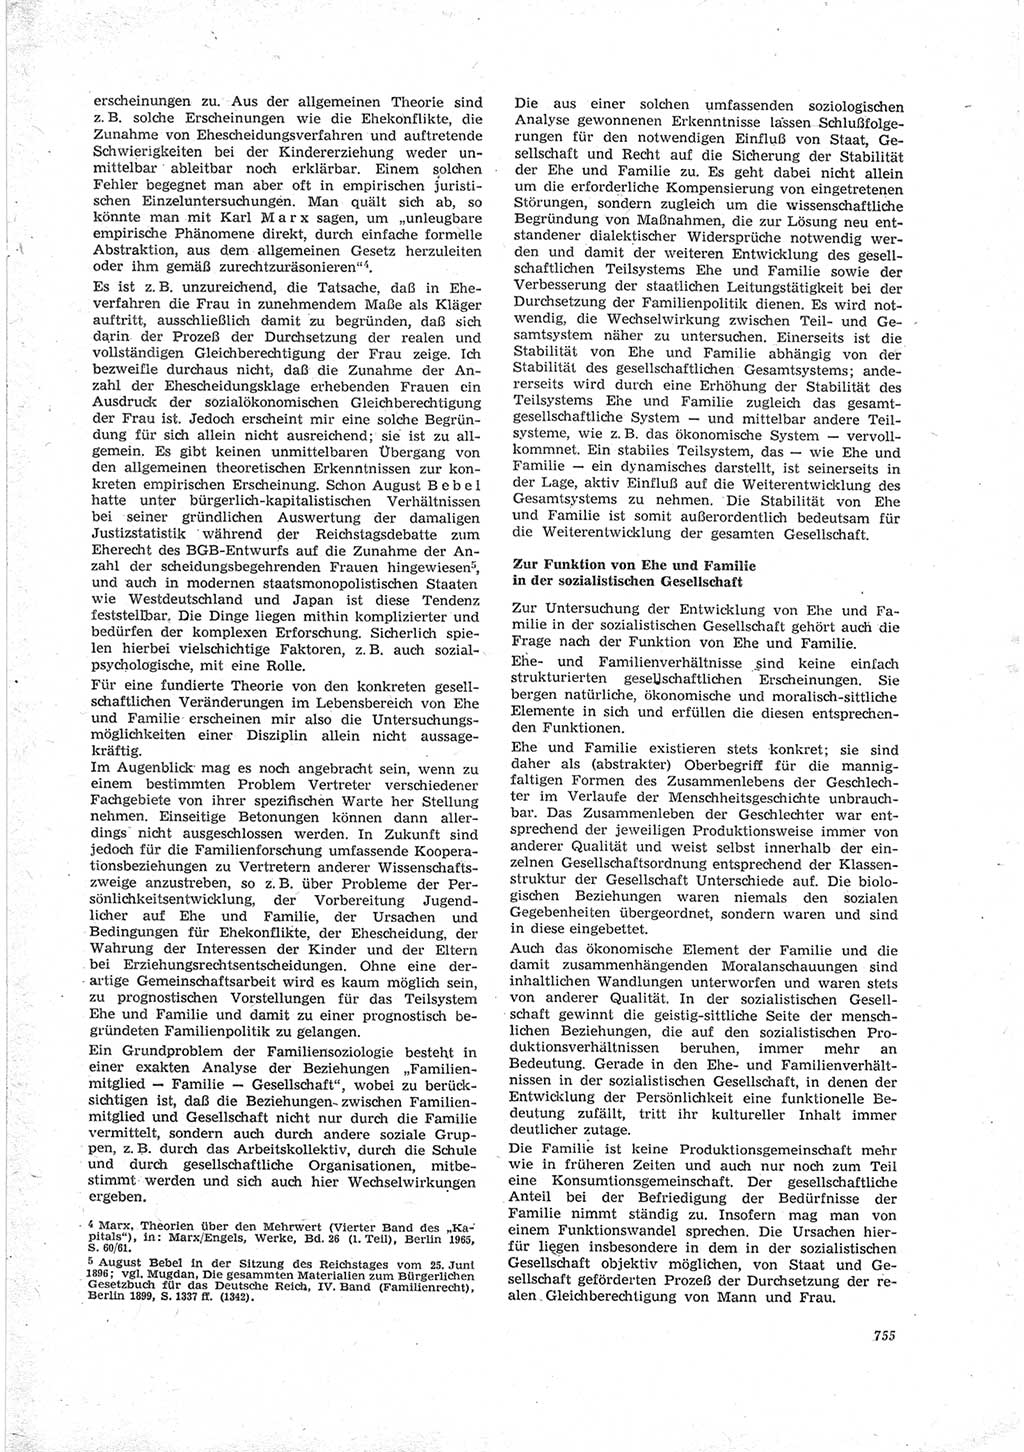 Neue Justiz (NJ), Zeitschrift für Recht und Rechtswissenschaft [Deutsche Demokratische Republik (DDR)], 23. Jahrgang 1969, Seite 755 (NJ DDR 1969, S. 755)